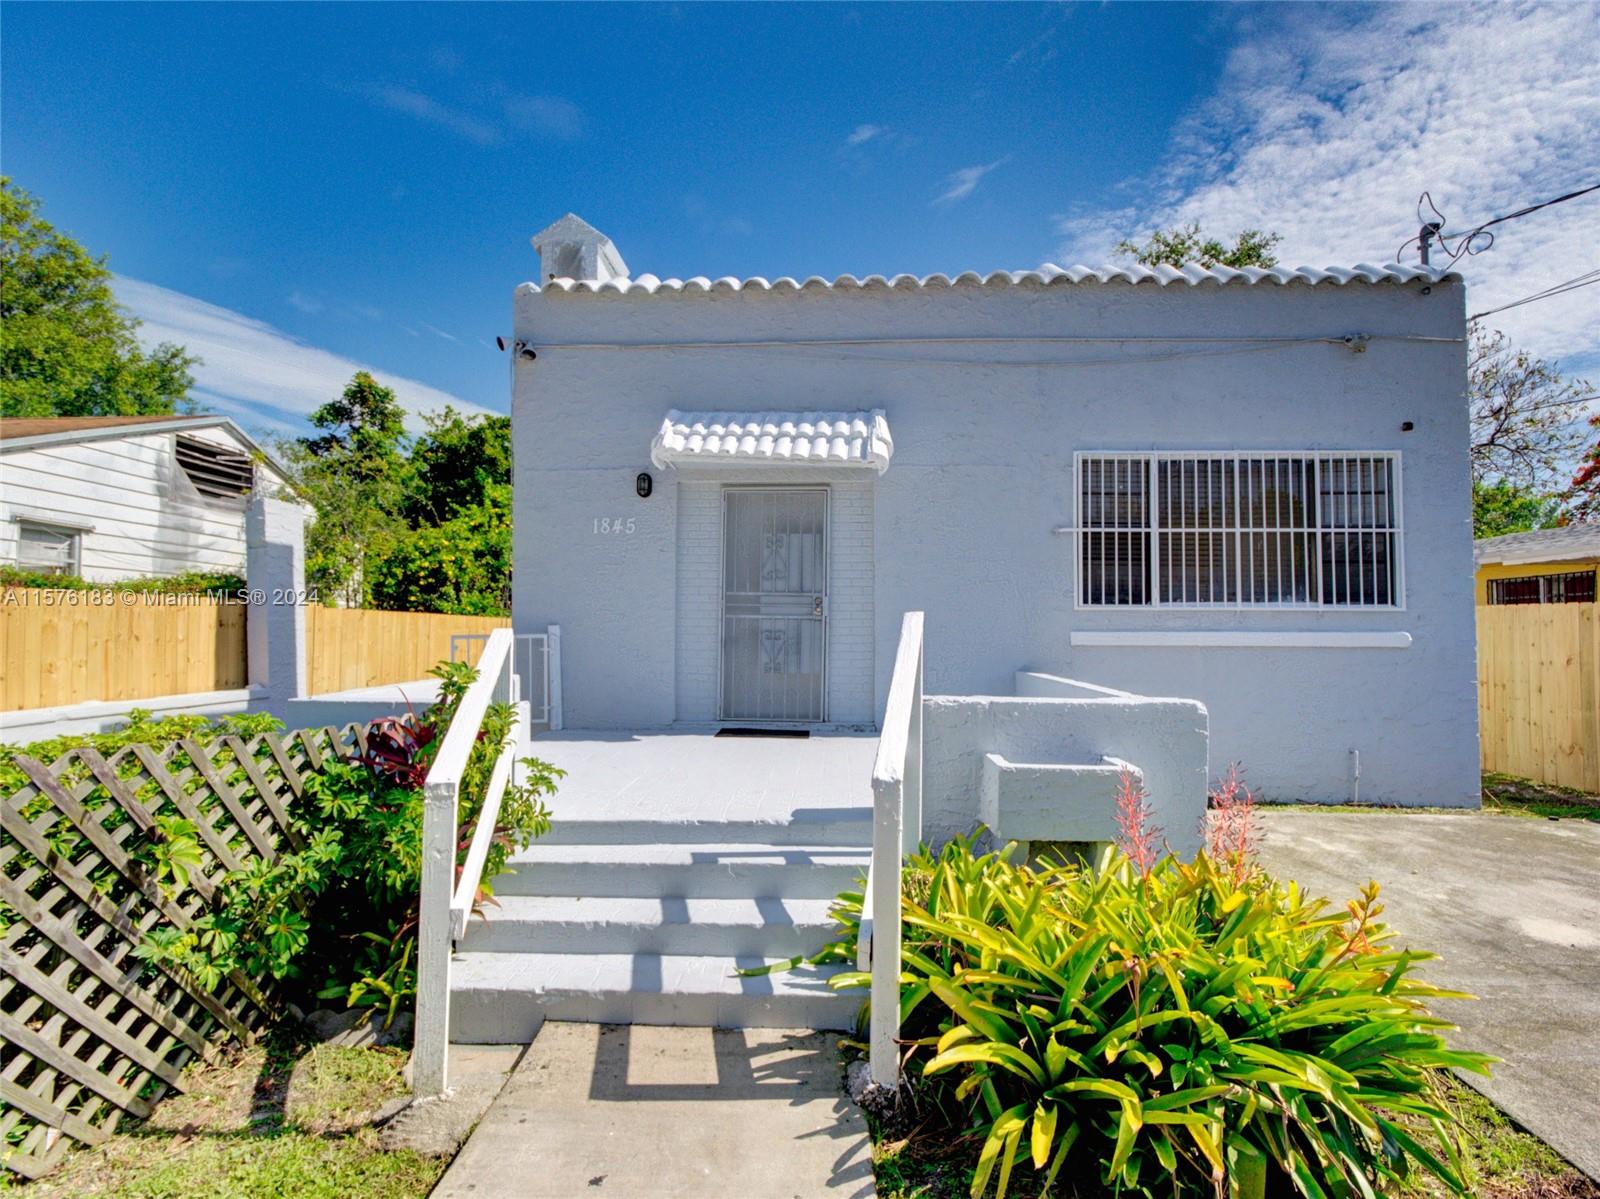 Rental Property at 1845 Nw 55th St, Miami, Broward County, Florida -  - $618,000 MO.